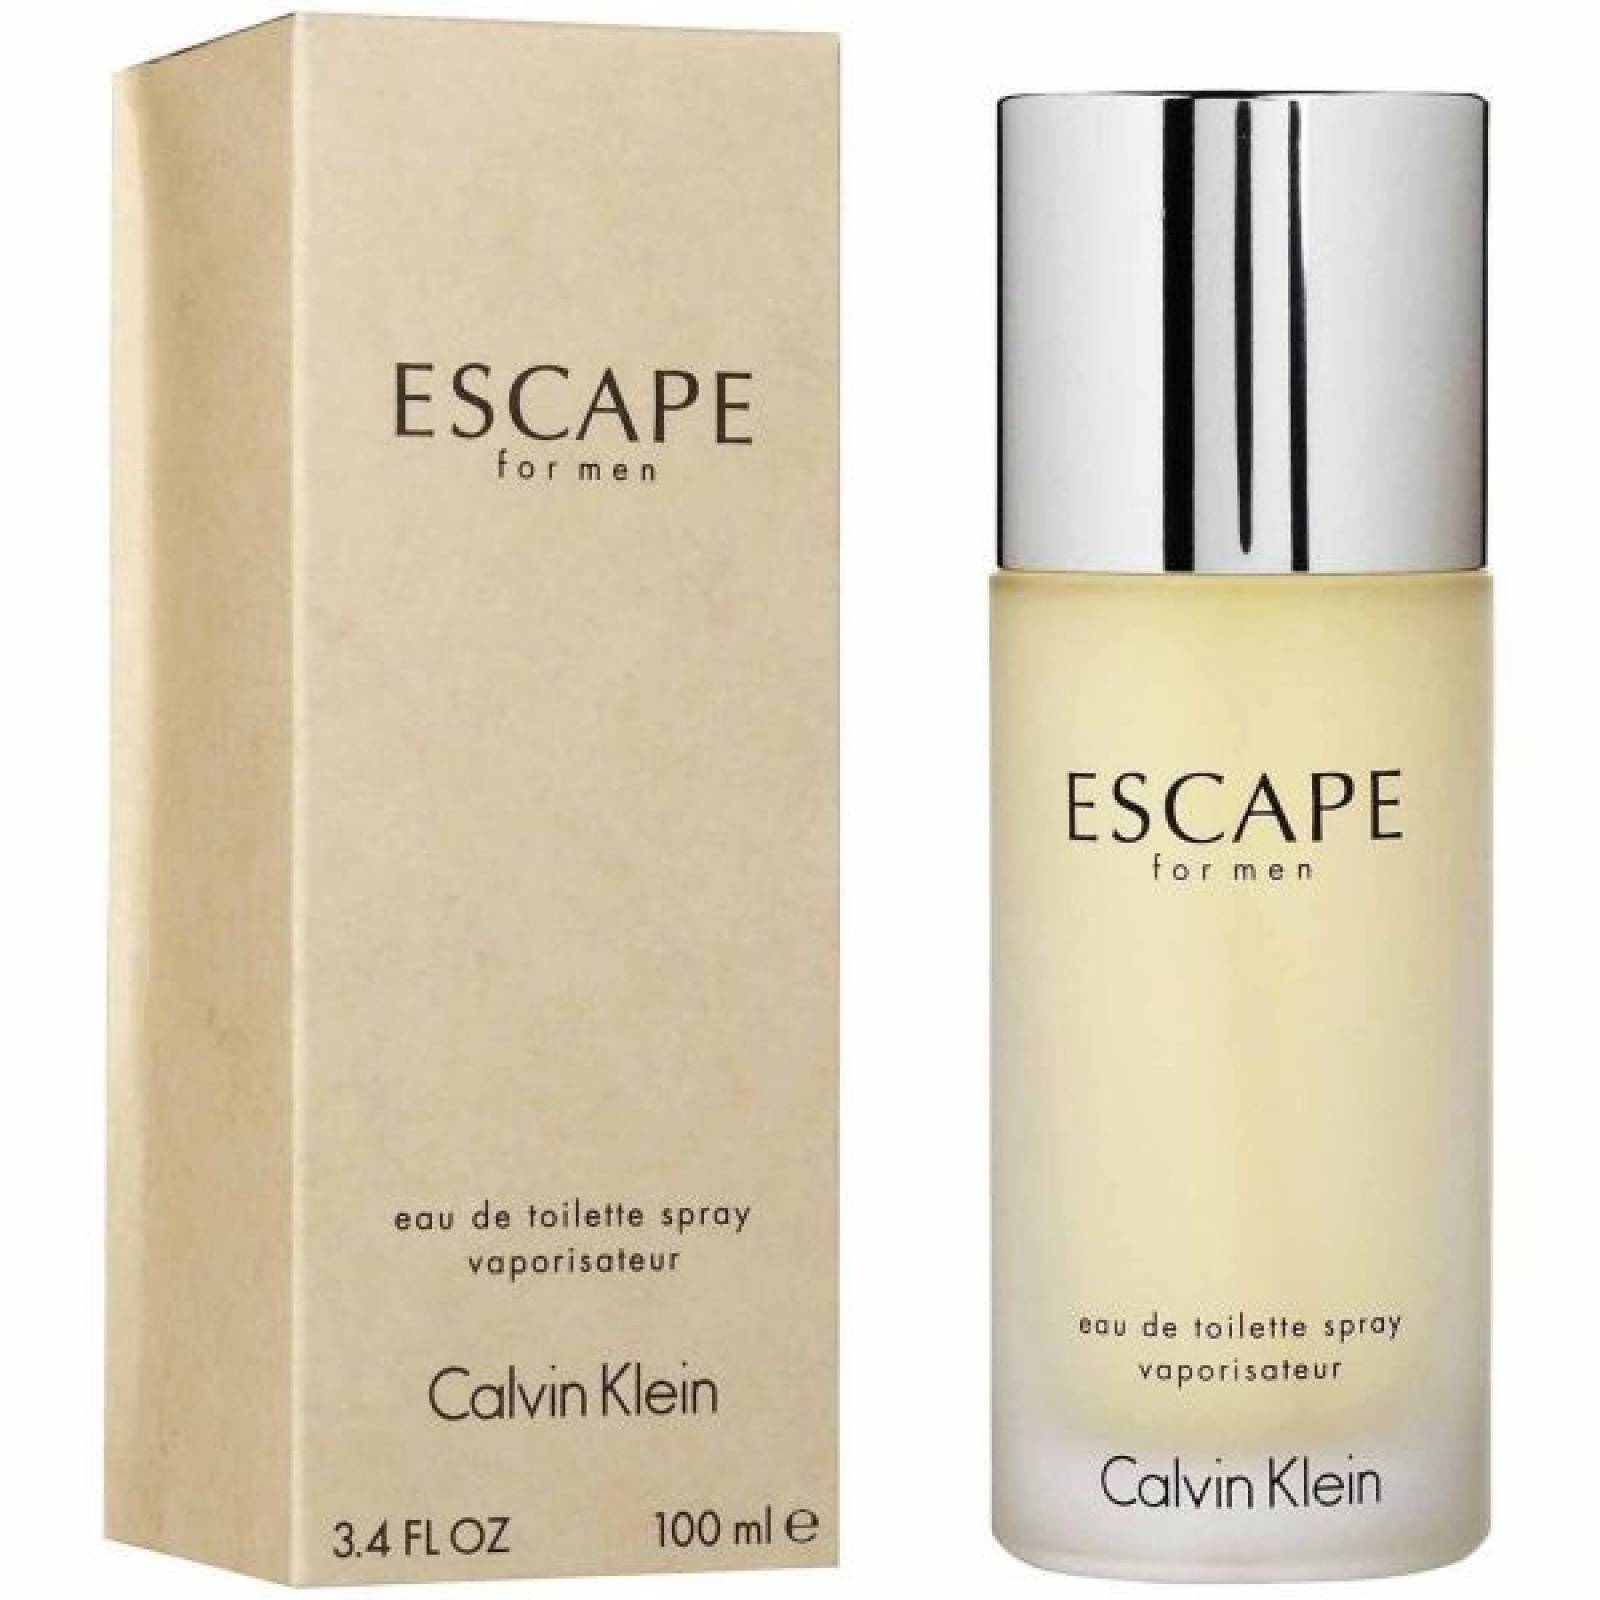 Escape Caballero 100 ml Calvin Klein Spray